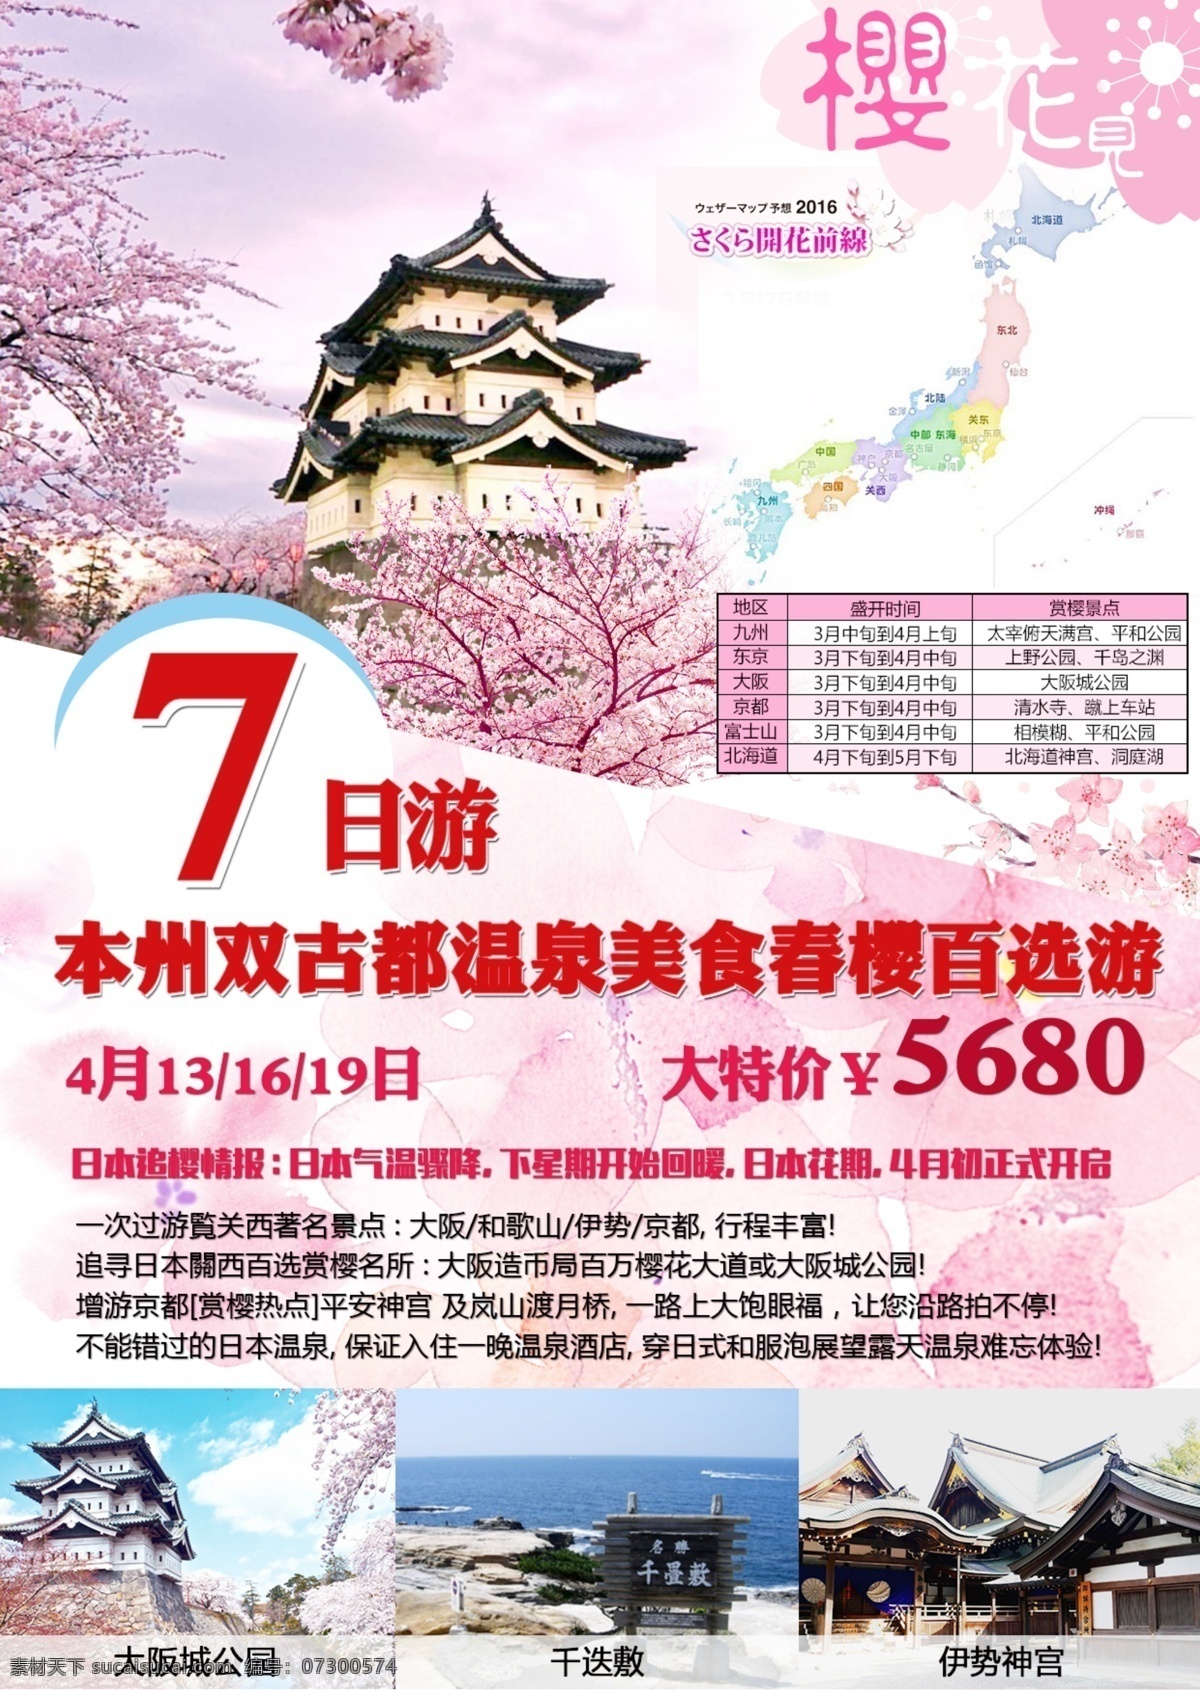 本州 双 古都 温泉 美食 春 樱 百 选 游 日本 亲子 旅游 海报 创意